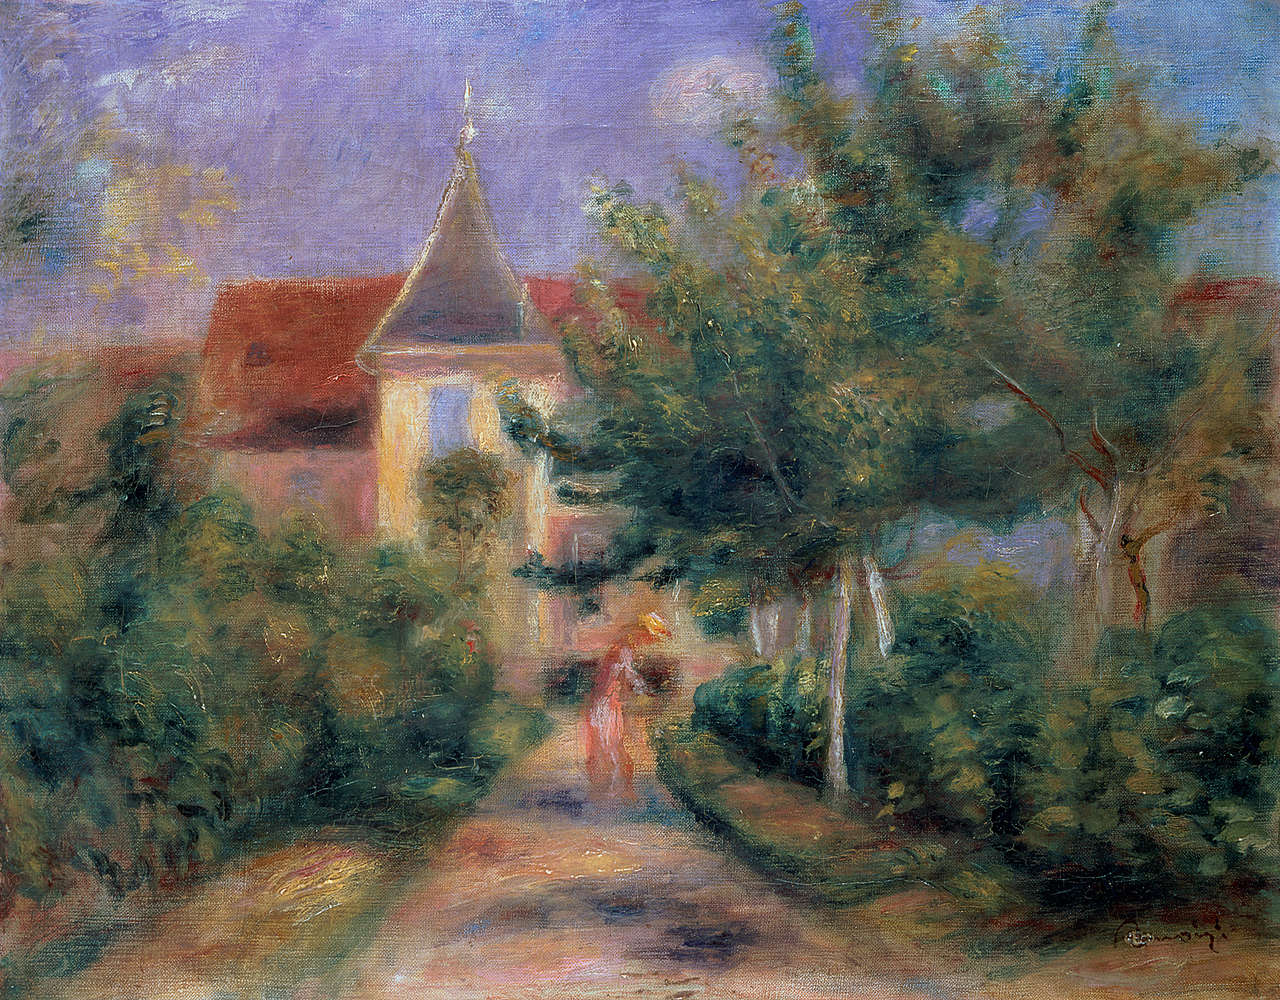             Photo wallpaper "Renoir's house in Essoyes" by Pierre Auguste Renoir
        